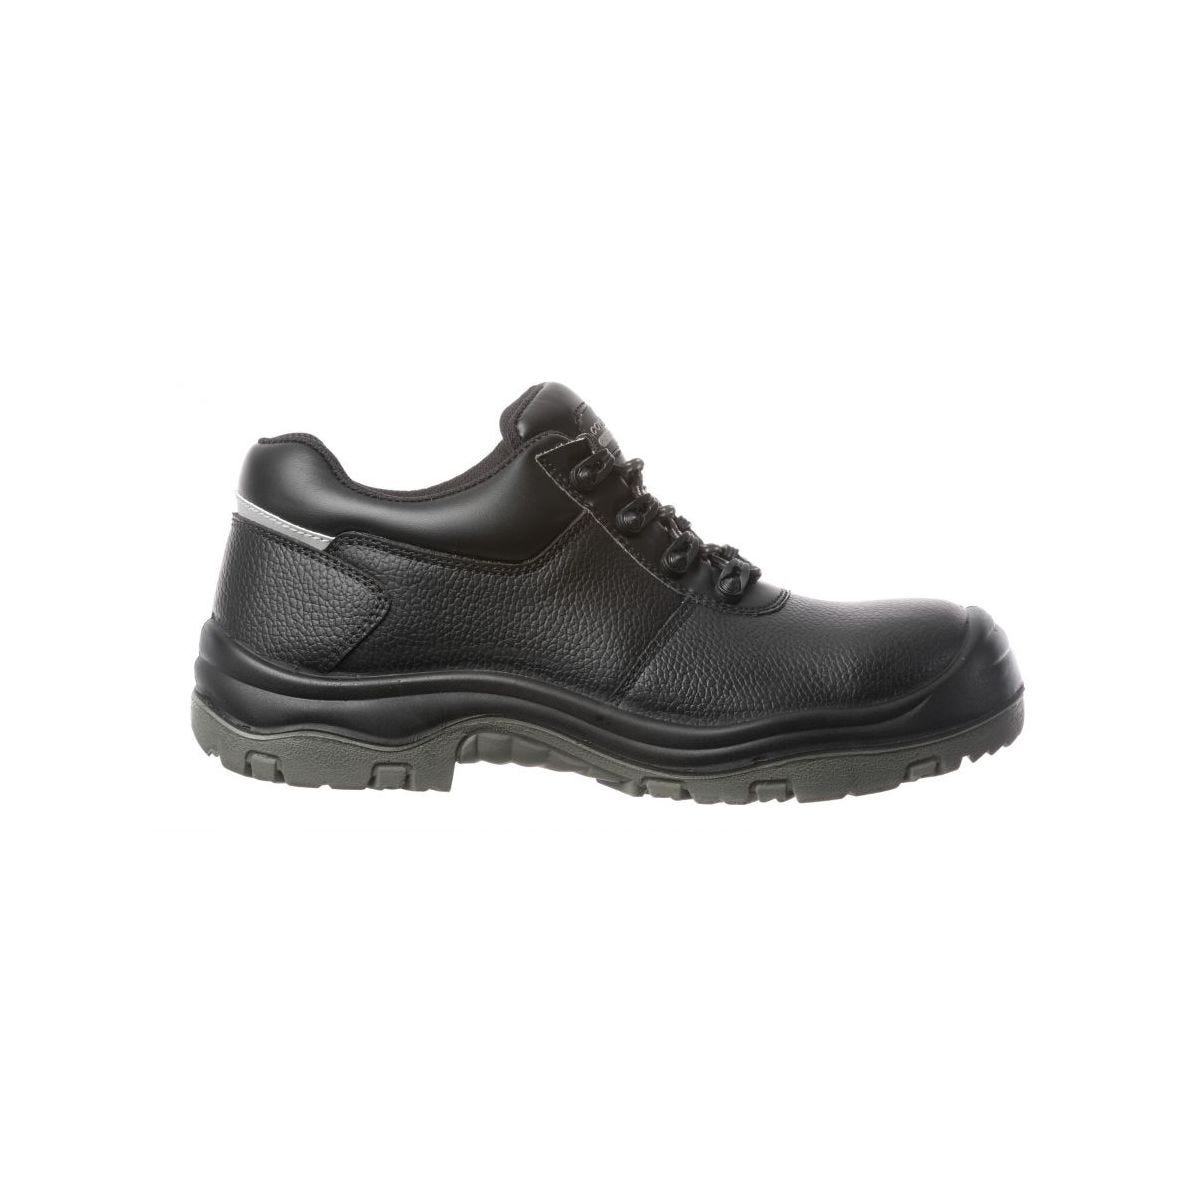 Chaussures de sécurité basses FREEDITE S3 SRC - Coverguard - Taille 41 1